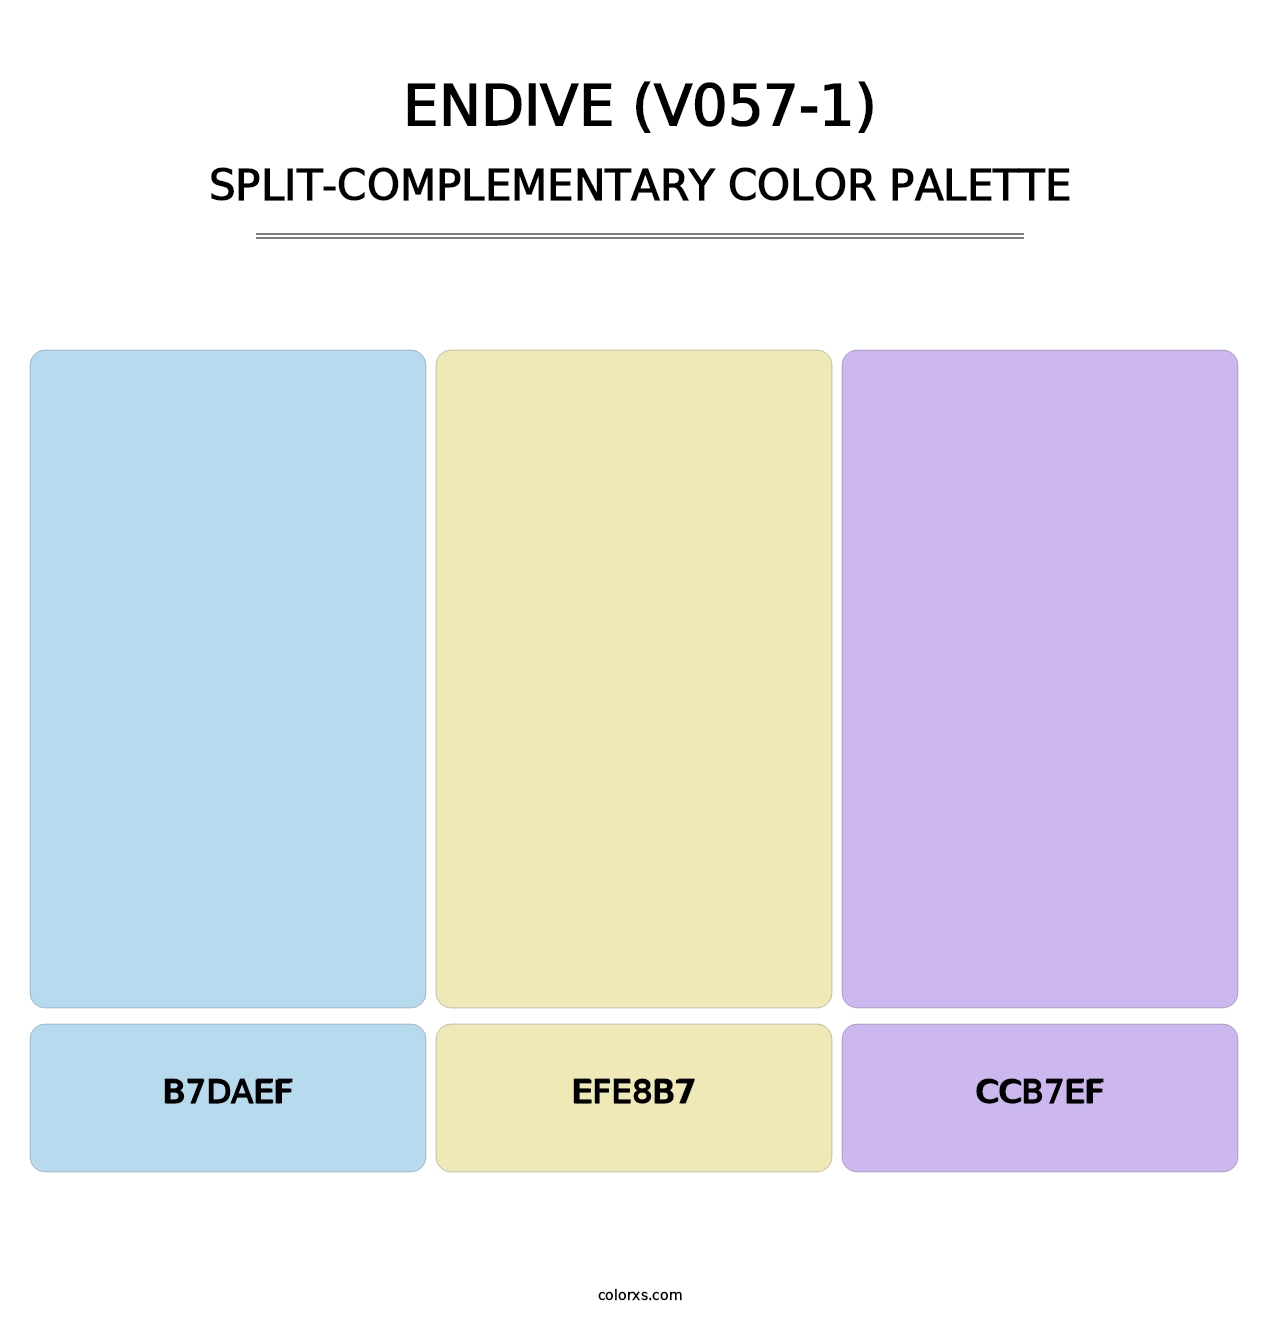 Endive (V057-1) - Split-Complementary Color Palette